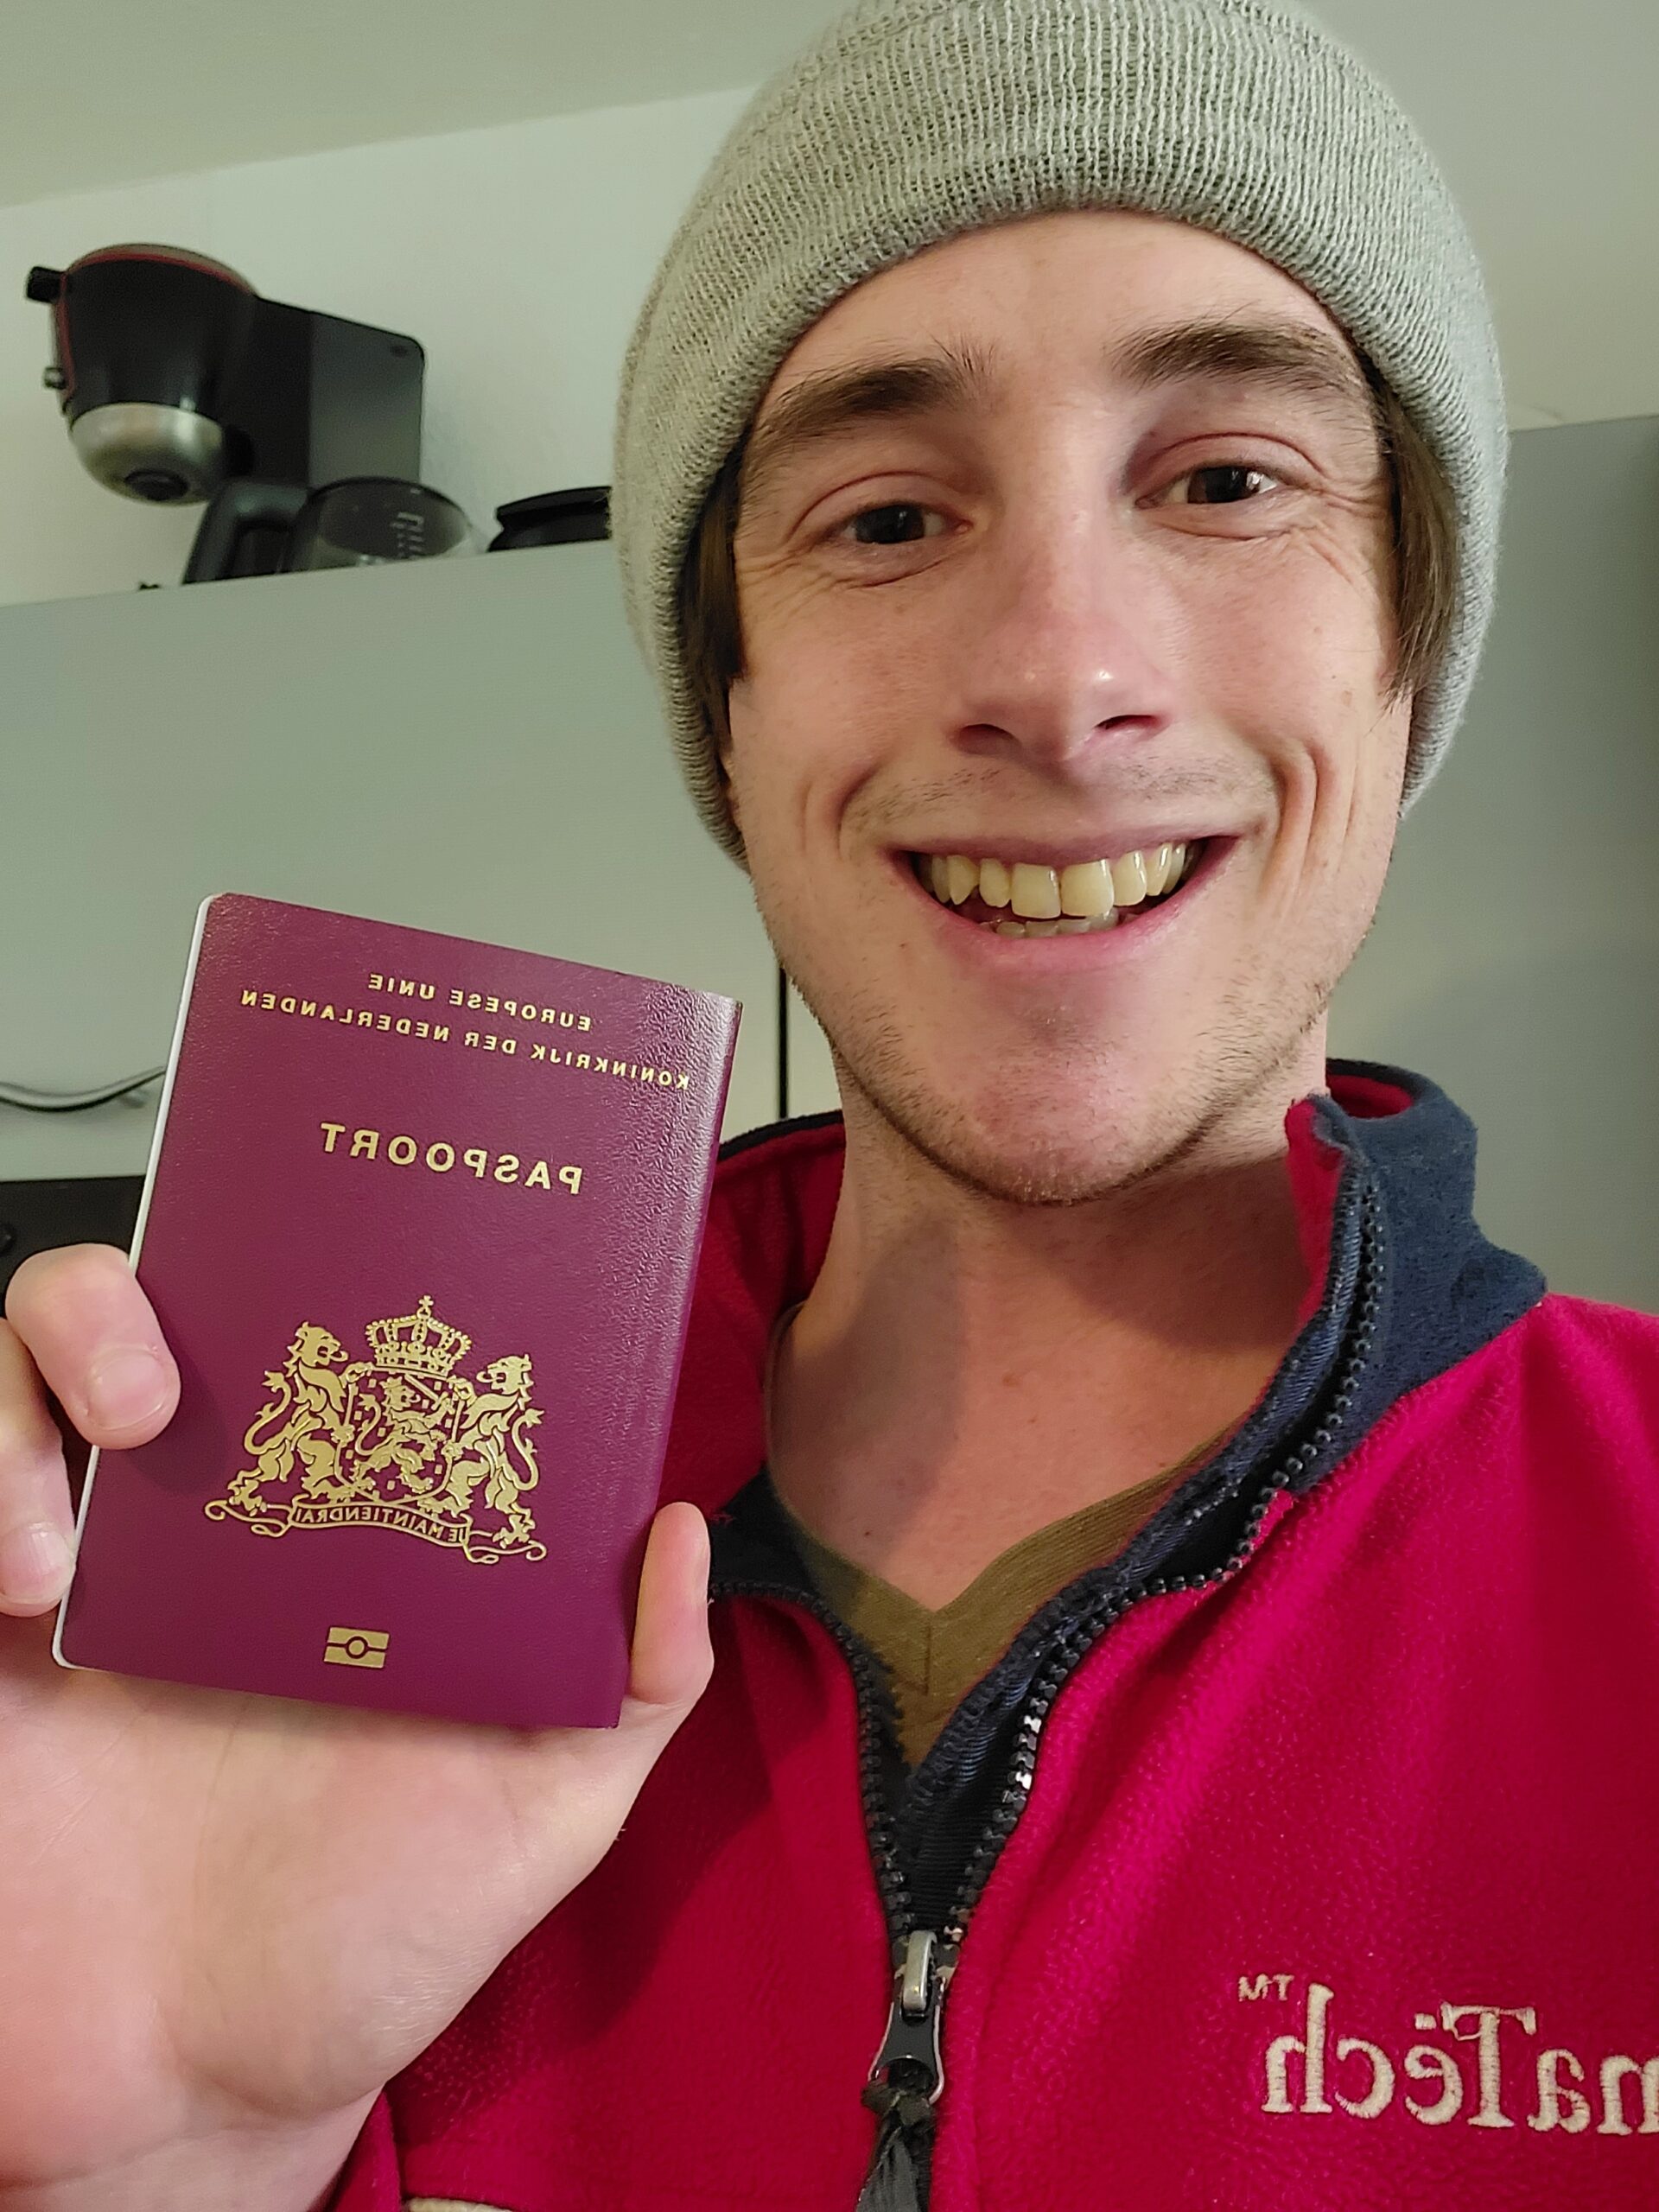 Je bekijkt nu Mijn Nederlandse nationaliteit bevestigd en mijn paspoort verkregen met de deskundige hulp van Kris!